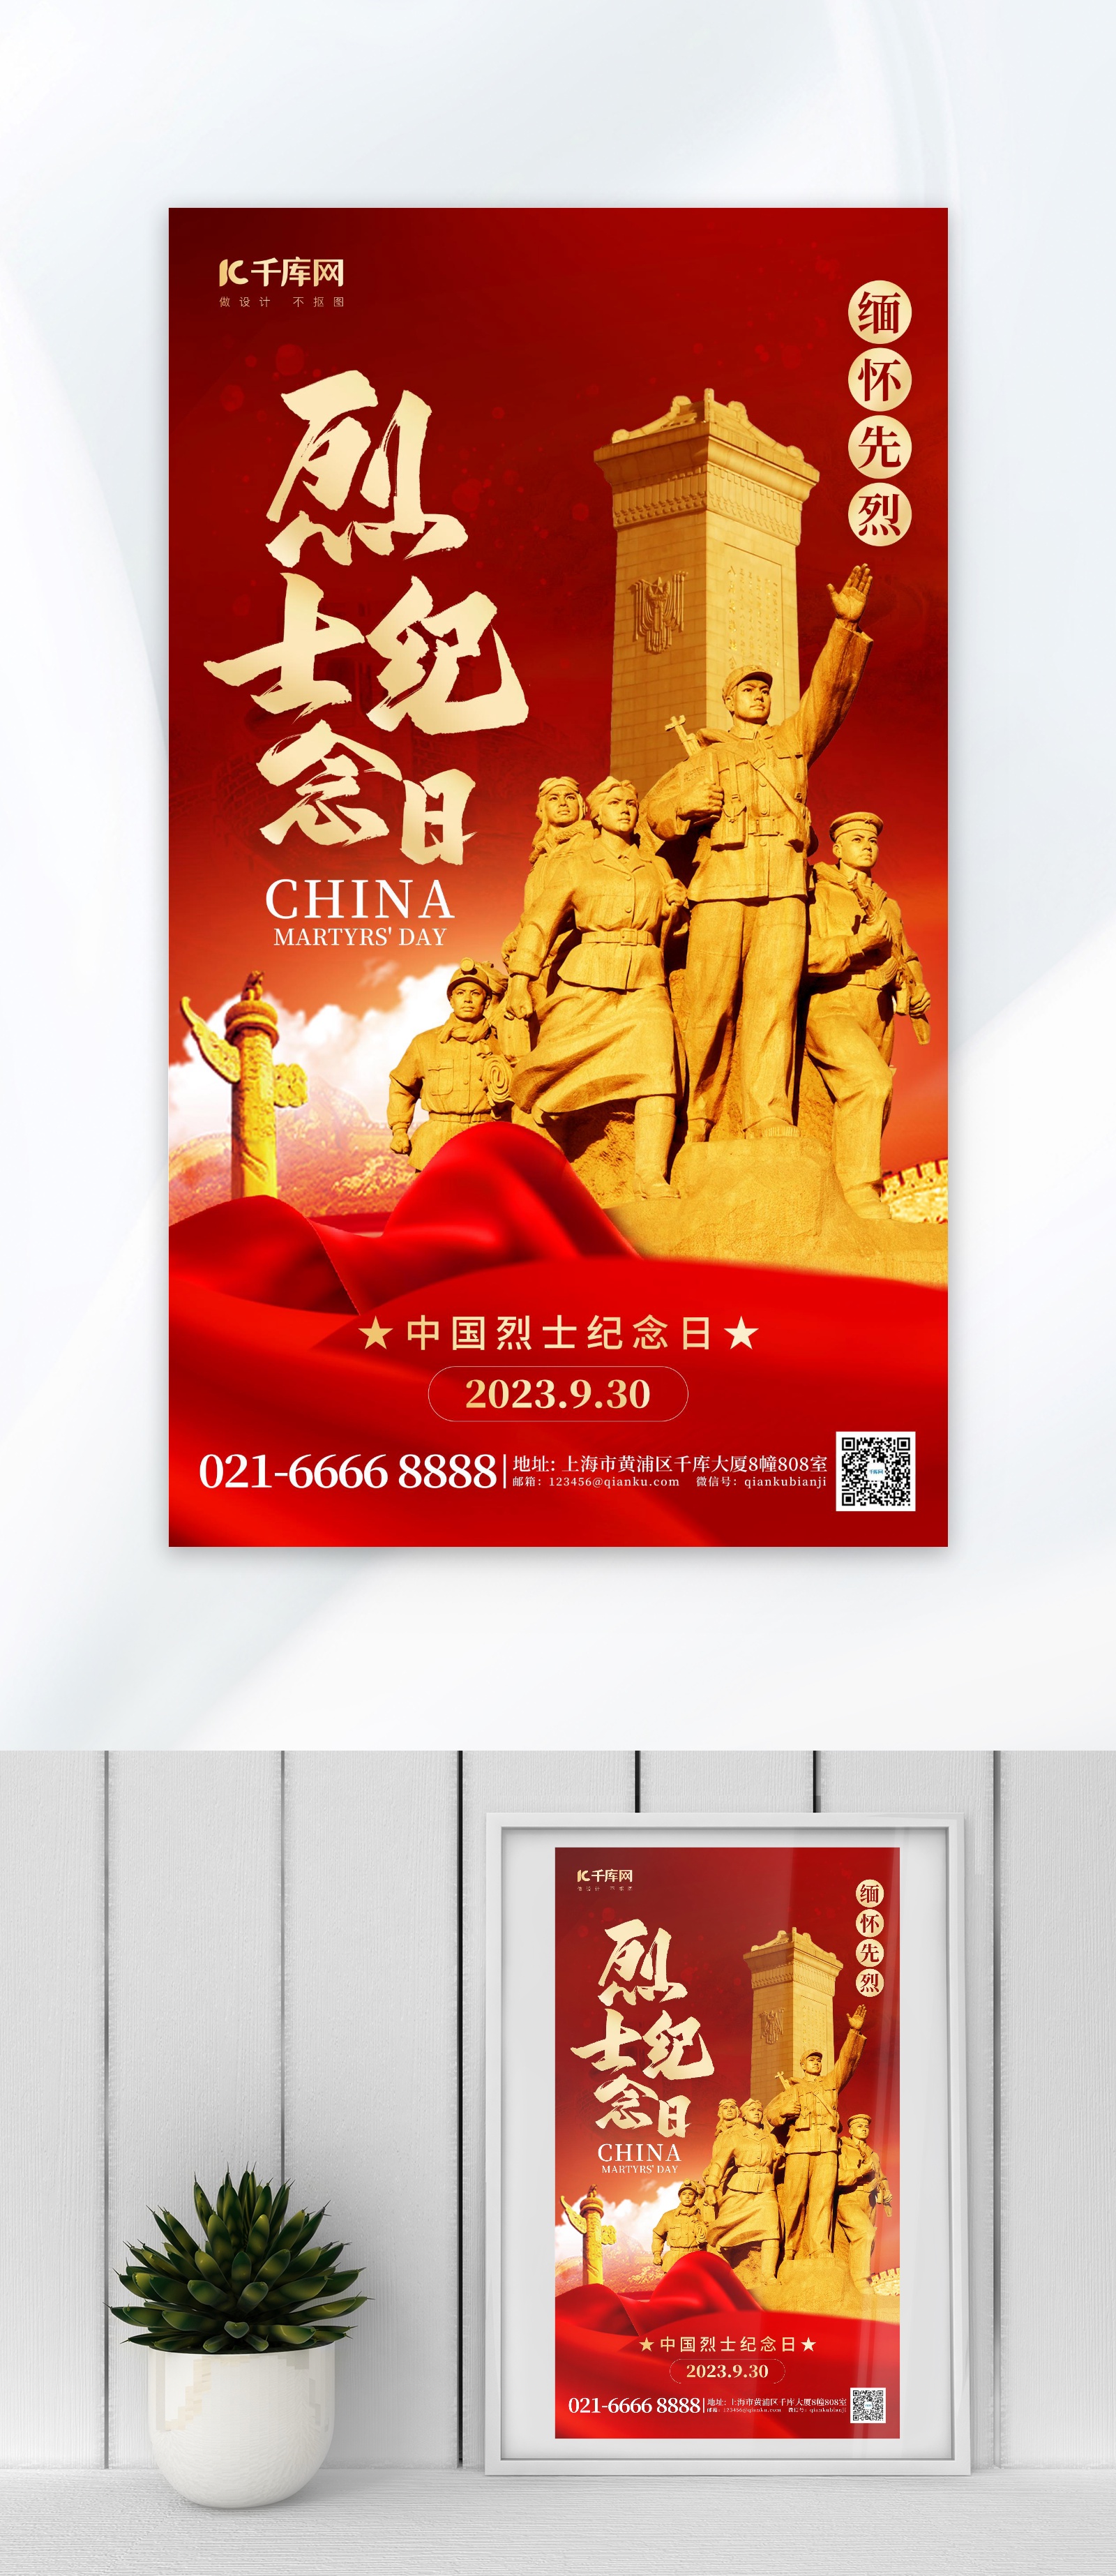 中国烈士纪念日节日宣传插画手机海报_图片模板素材-稿定设计